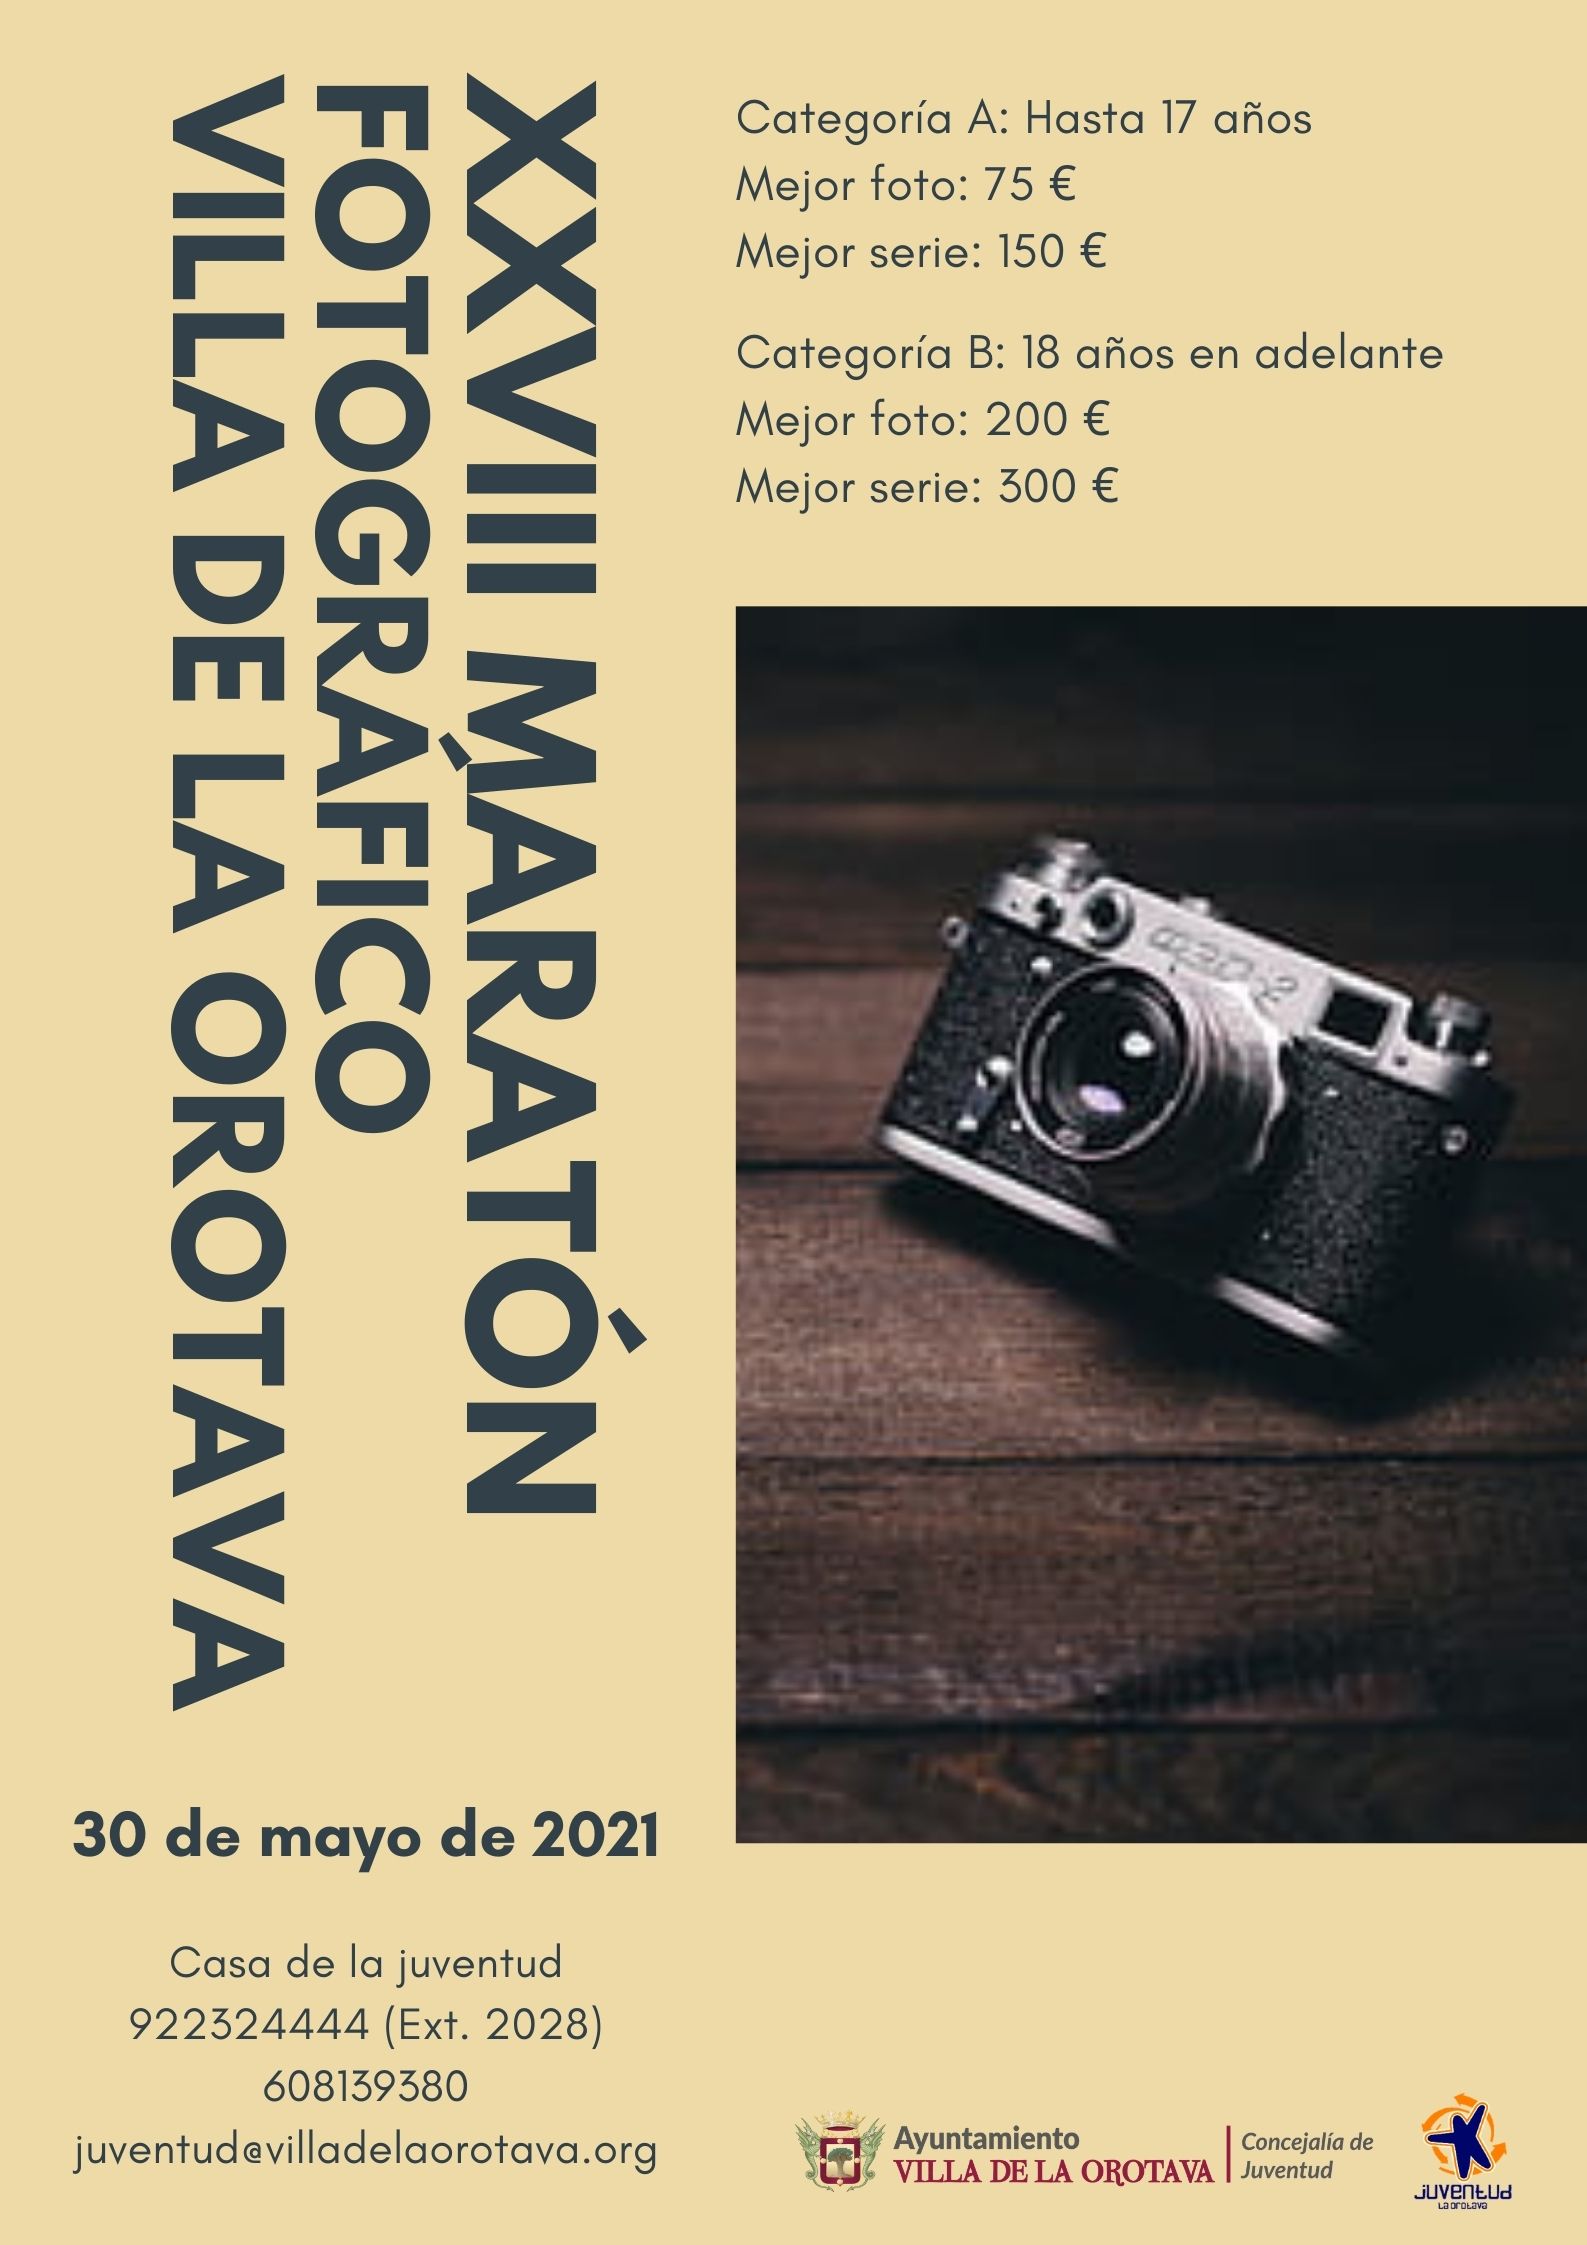 El certamen se celebrará el próximo 30 de mayo ‘Día de Canarias’ El plazo de inscripción finaliza el 29 de mayo y se tendrá que tramitar a través del siguiente enlace: https://forms.gle/kxqa46SvjH8unMNV6 